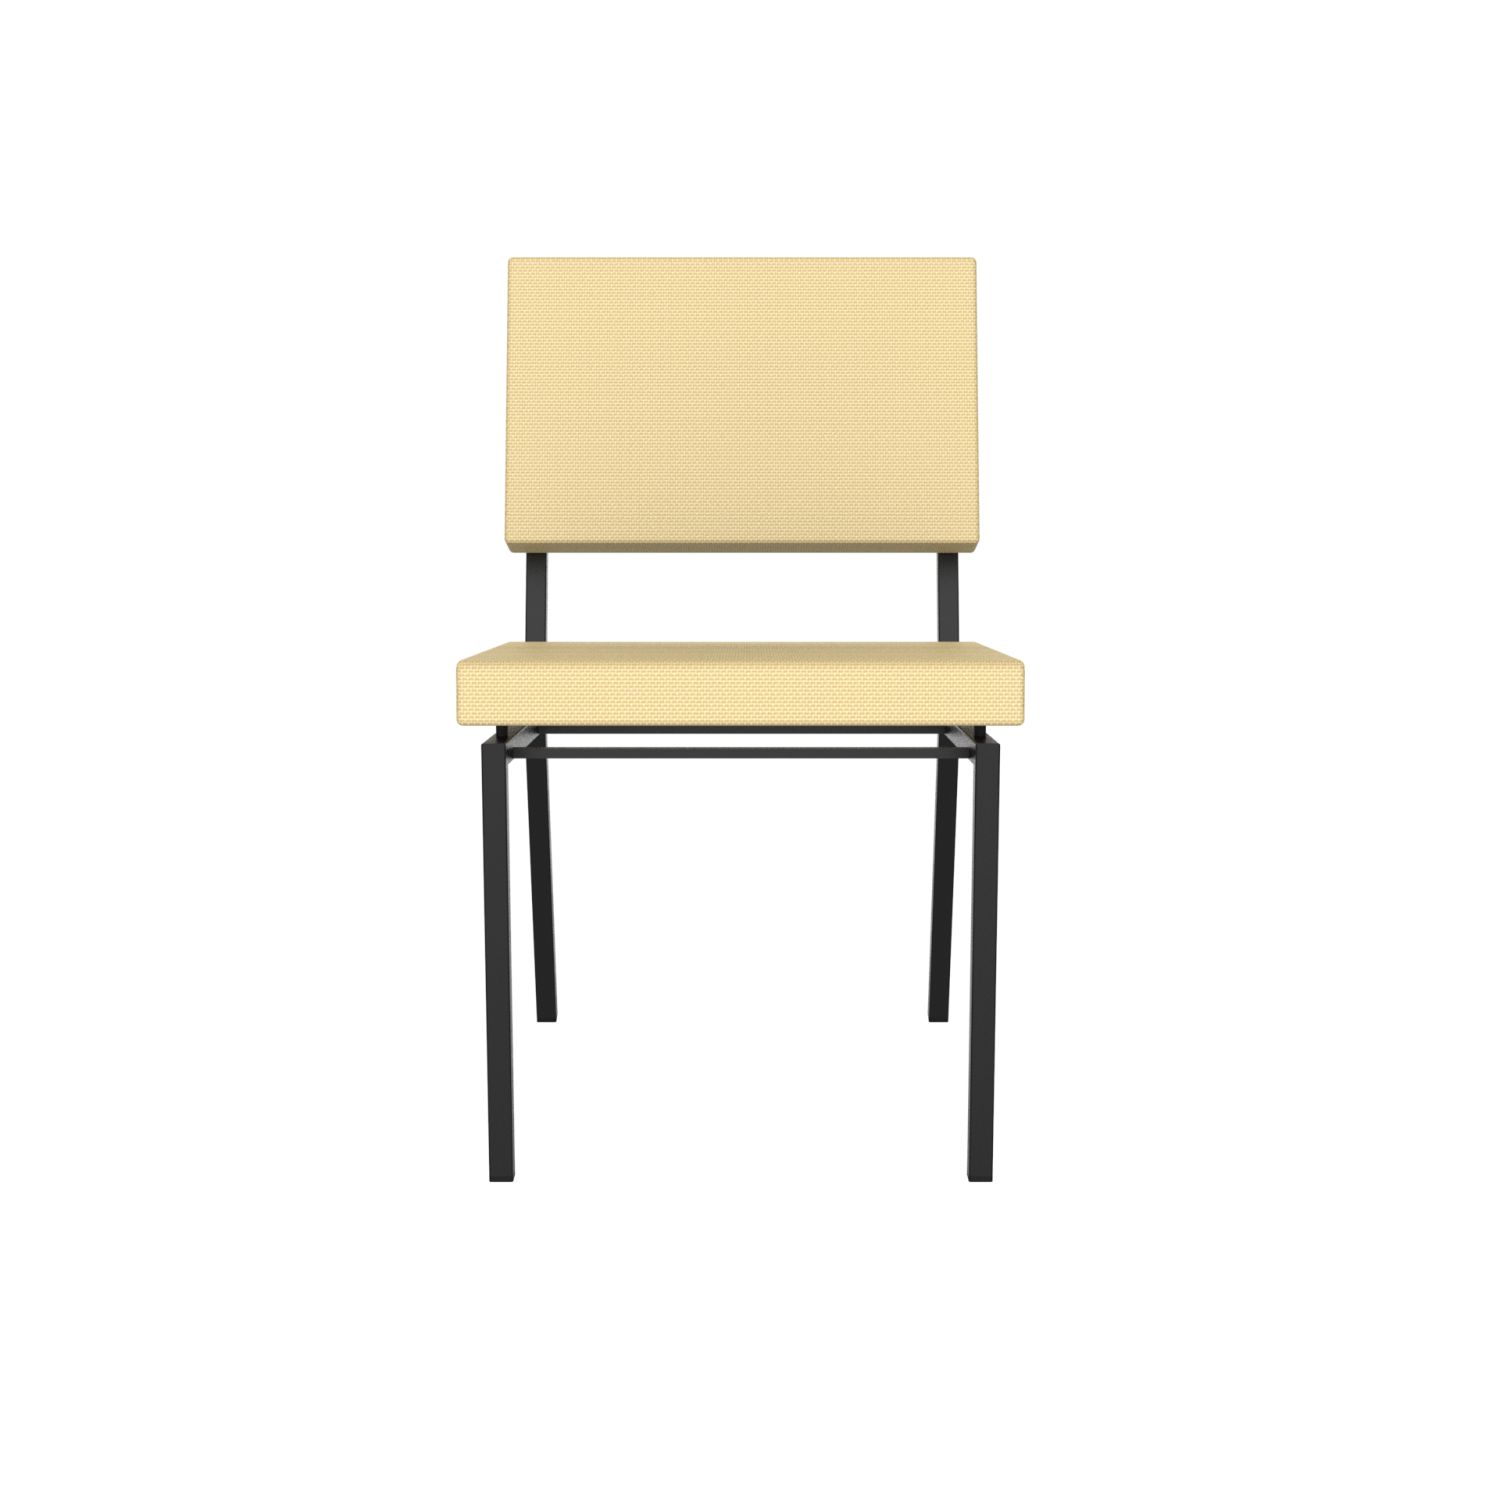 lensvelt gerrit veenendaal chair without armrests light brown 141 price level 1 black frame ral9005 hard leg ends